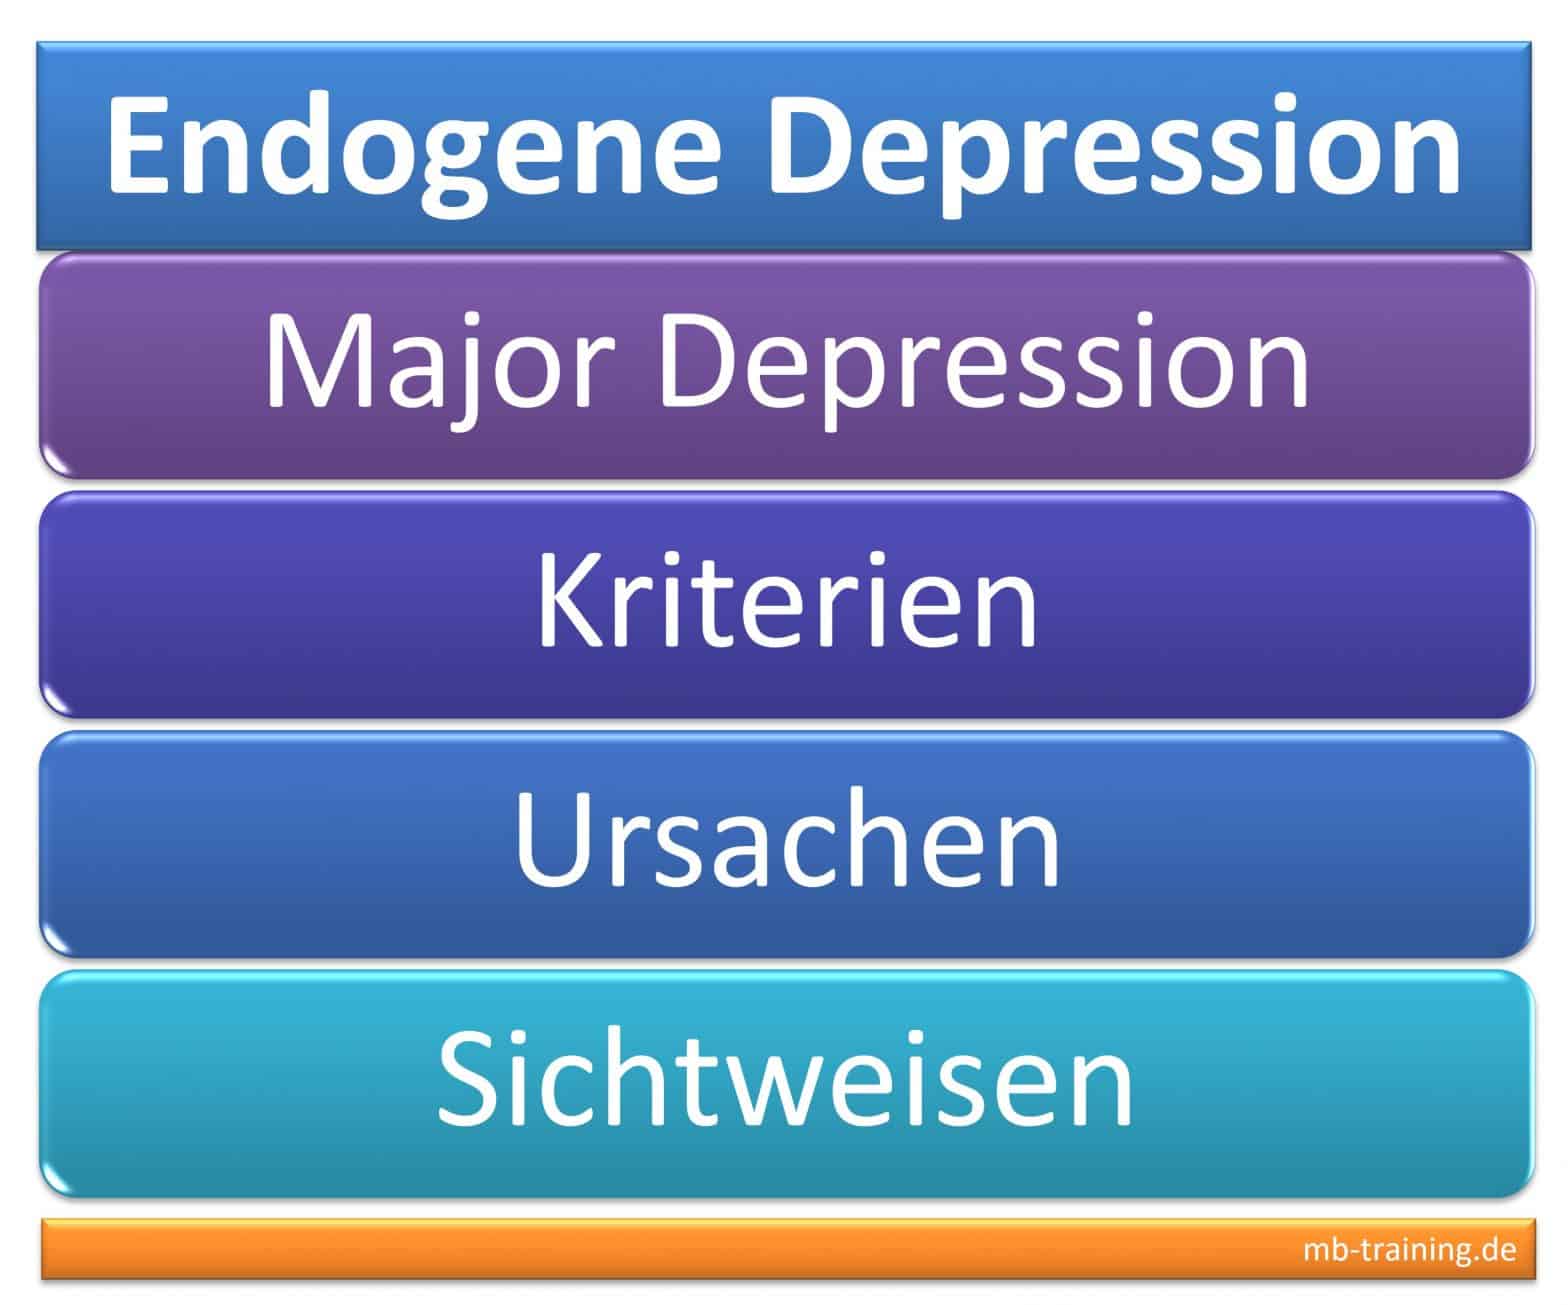 Endogene Depression, Major Depression, Kriterien, Sichtweisen und Ursachen: Familie, Überlastung, Traumata und Krankheiten als Auslöser.